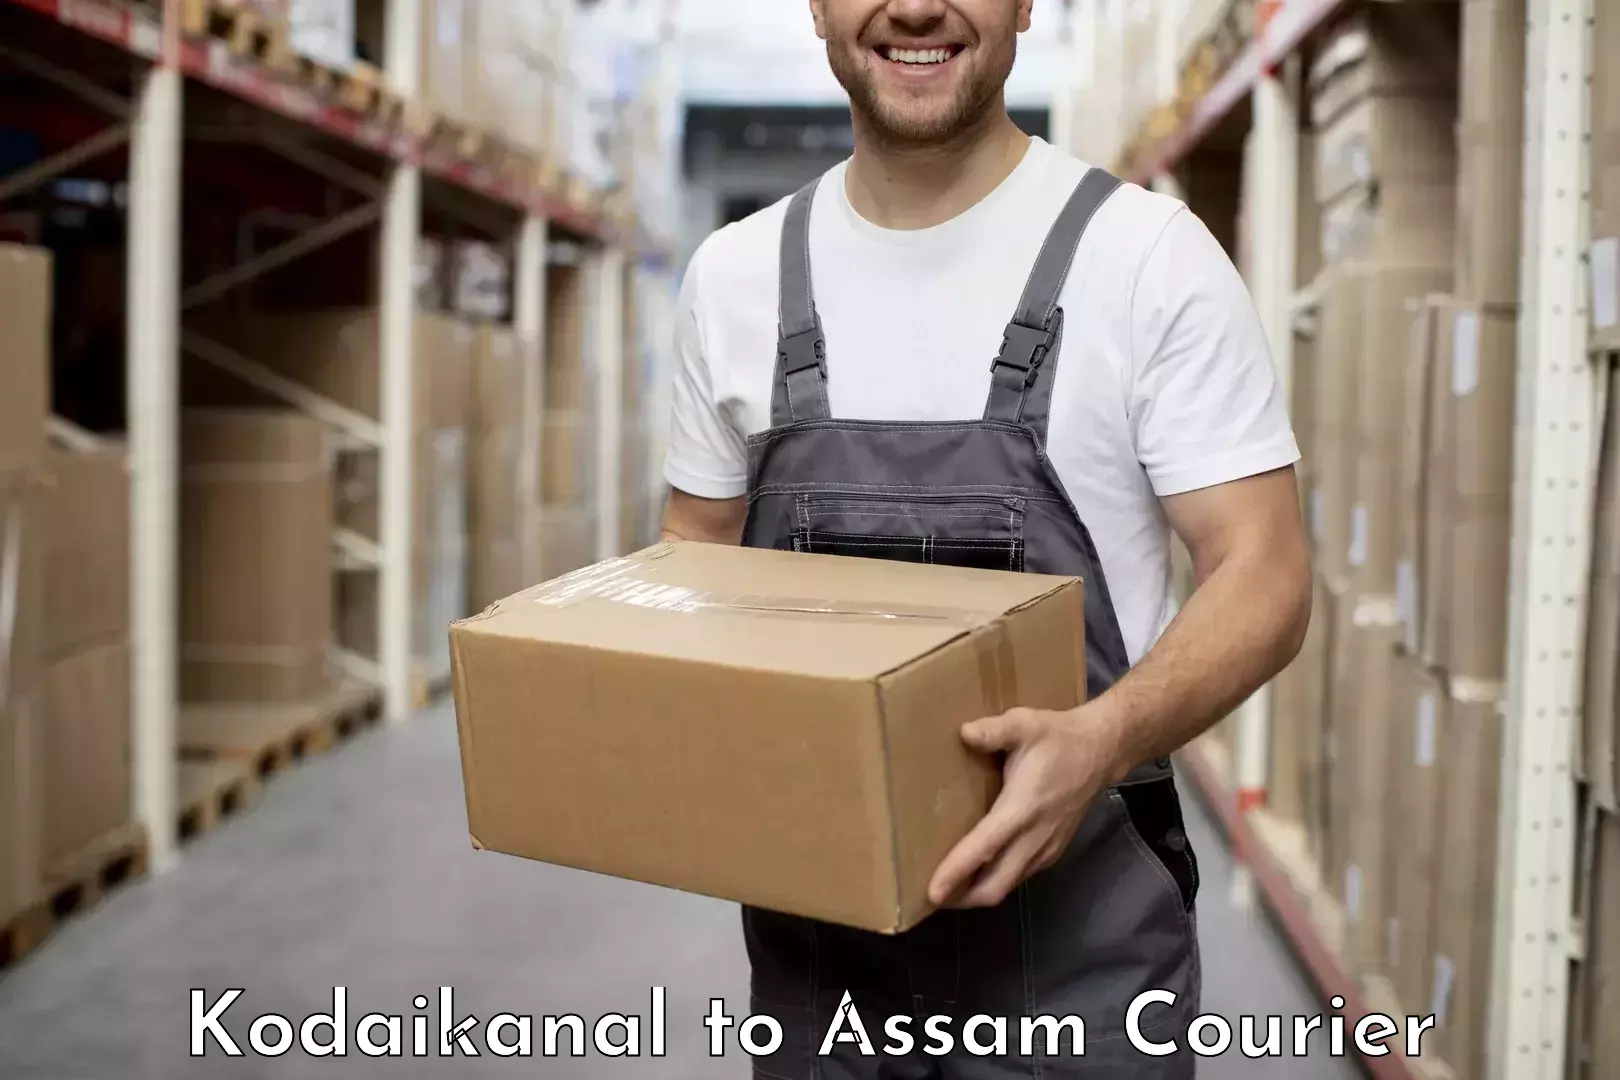 Bulk courier orders Kodaikanal to Kokrajhar